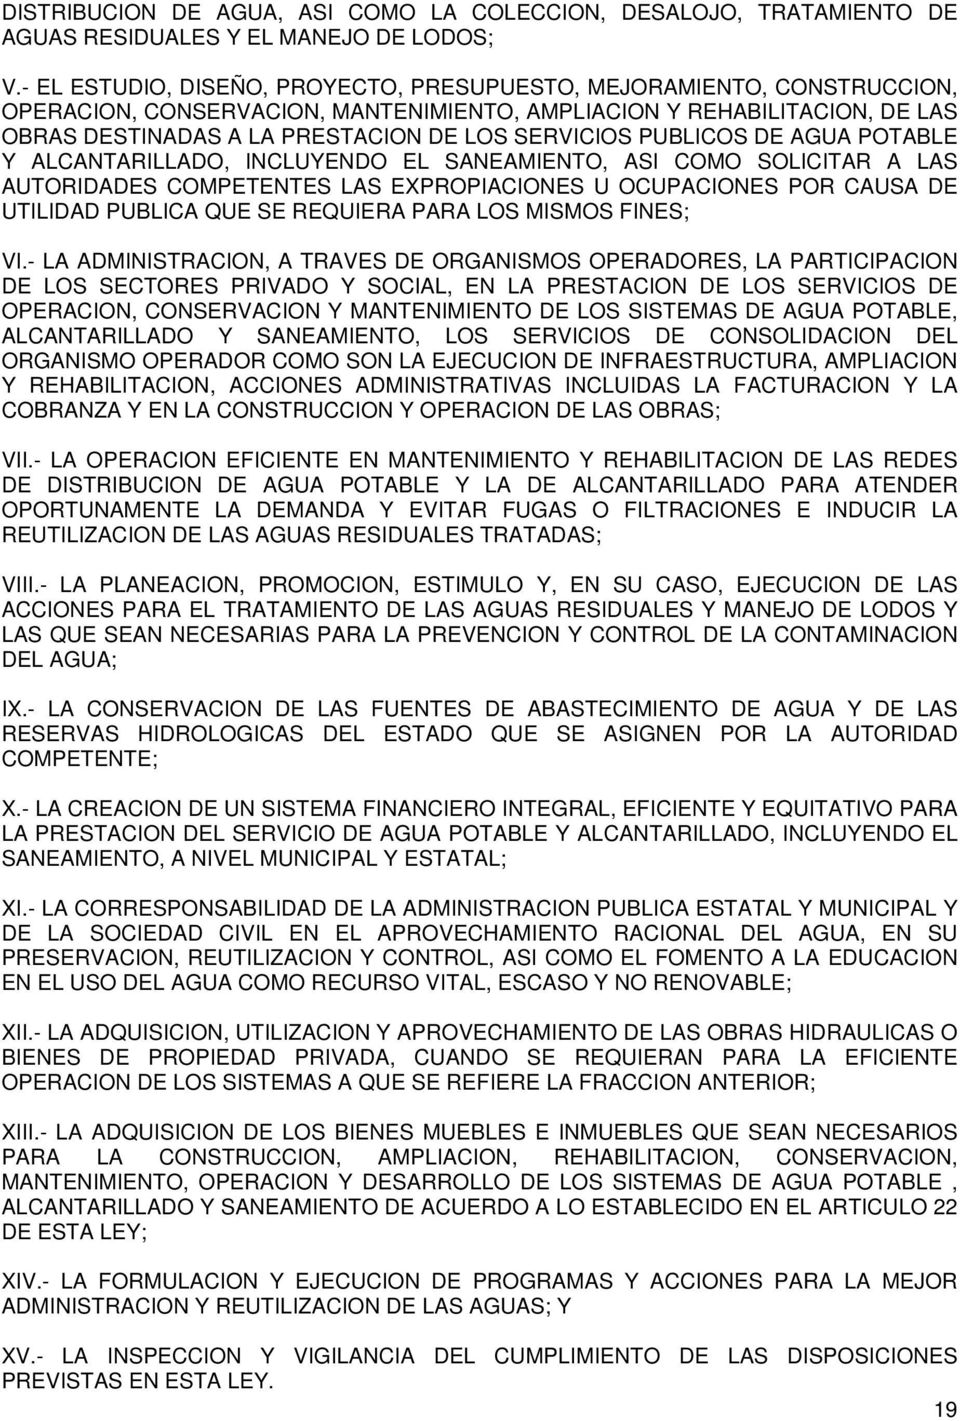 PUBLICOS DE AGUA POTABLE Y ALCANTARILLADO, INCLUYENDO EL SANEAMIENTO, ASI COMO SOLICITAR A LAS AUTORIDADES COMPETENTES LAS EXPROPIACIONES U OCUPACIONES POR CAUSA DE UTILIDAD PUBLICA QUE SE REQUIERA